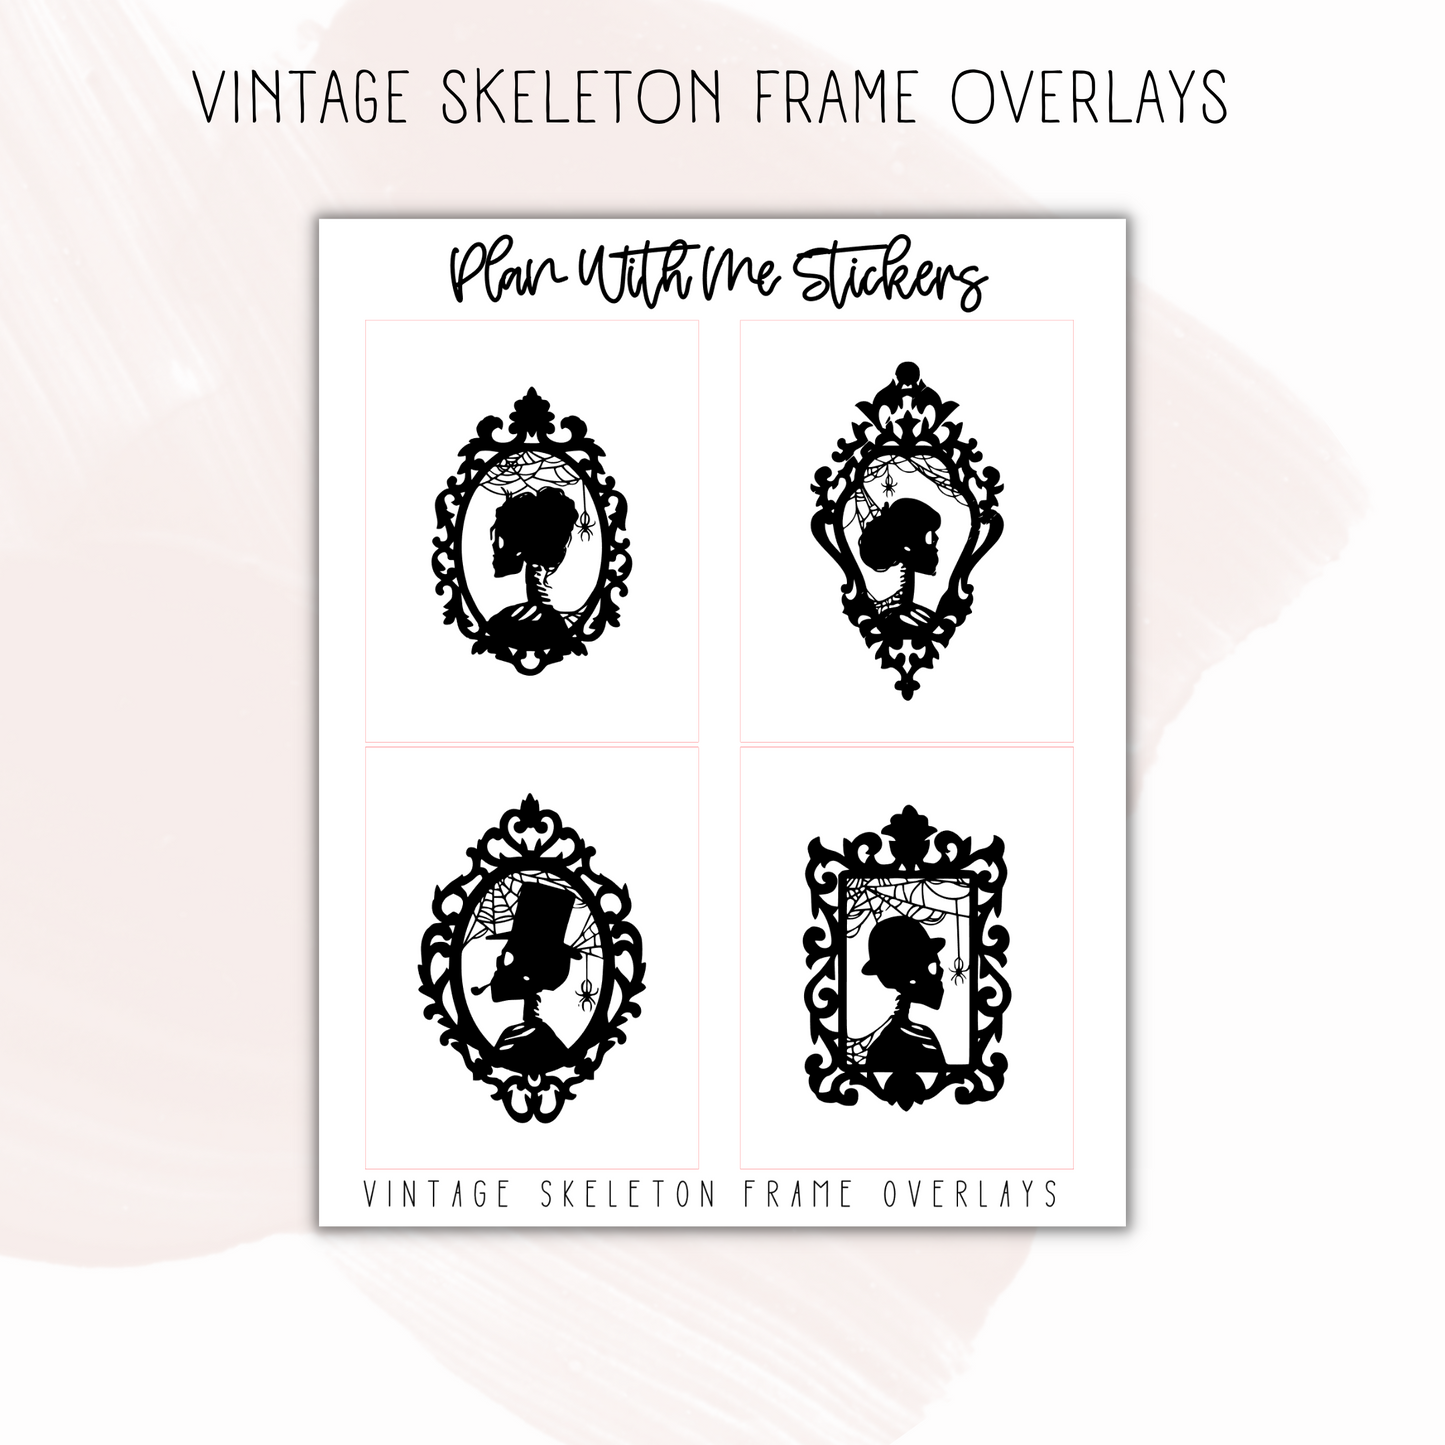 Vintage Skeleton Frame Overlays